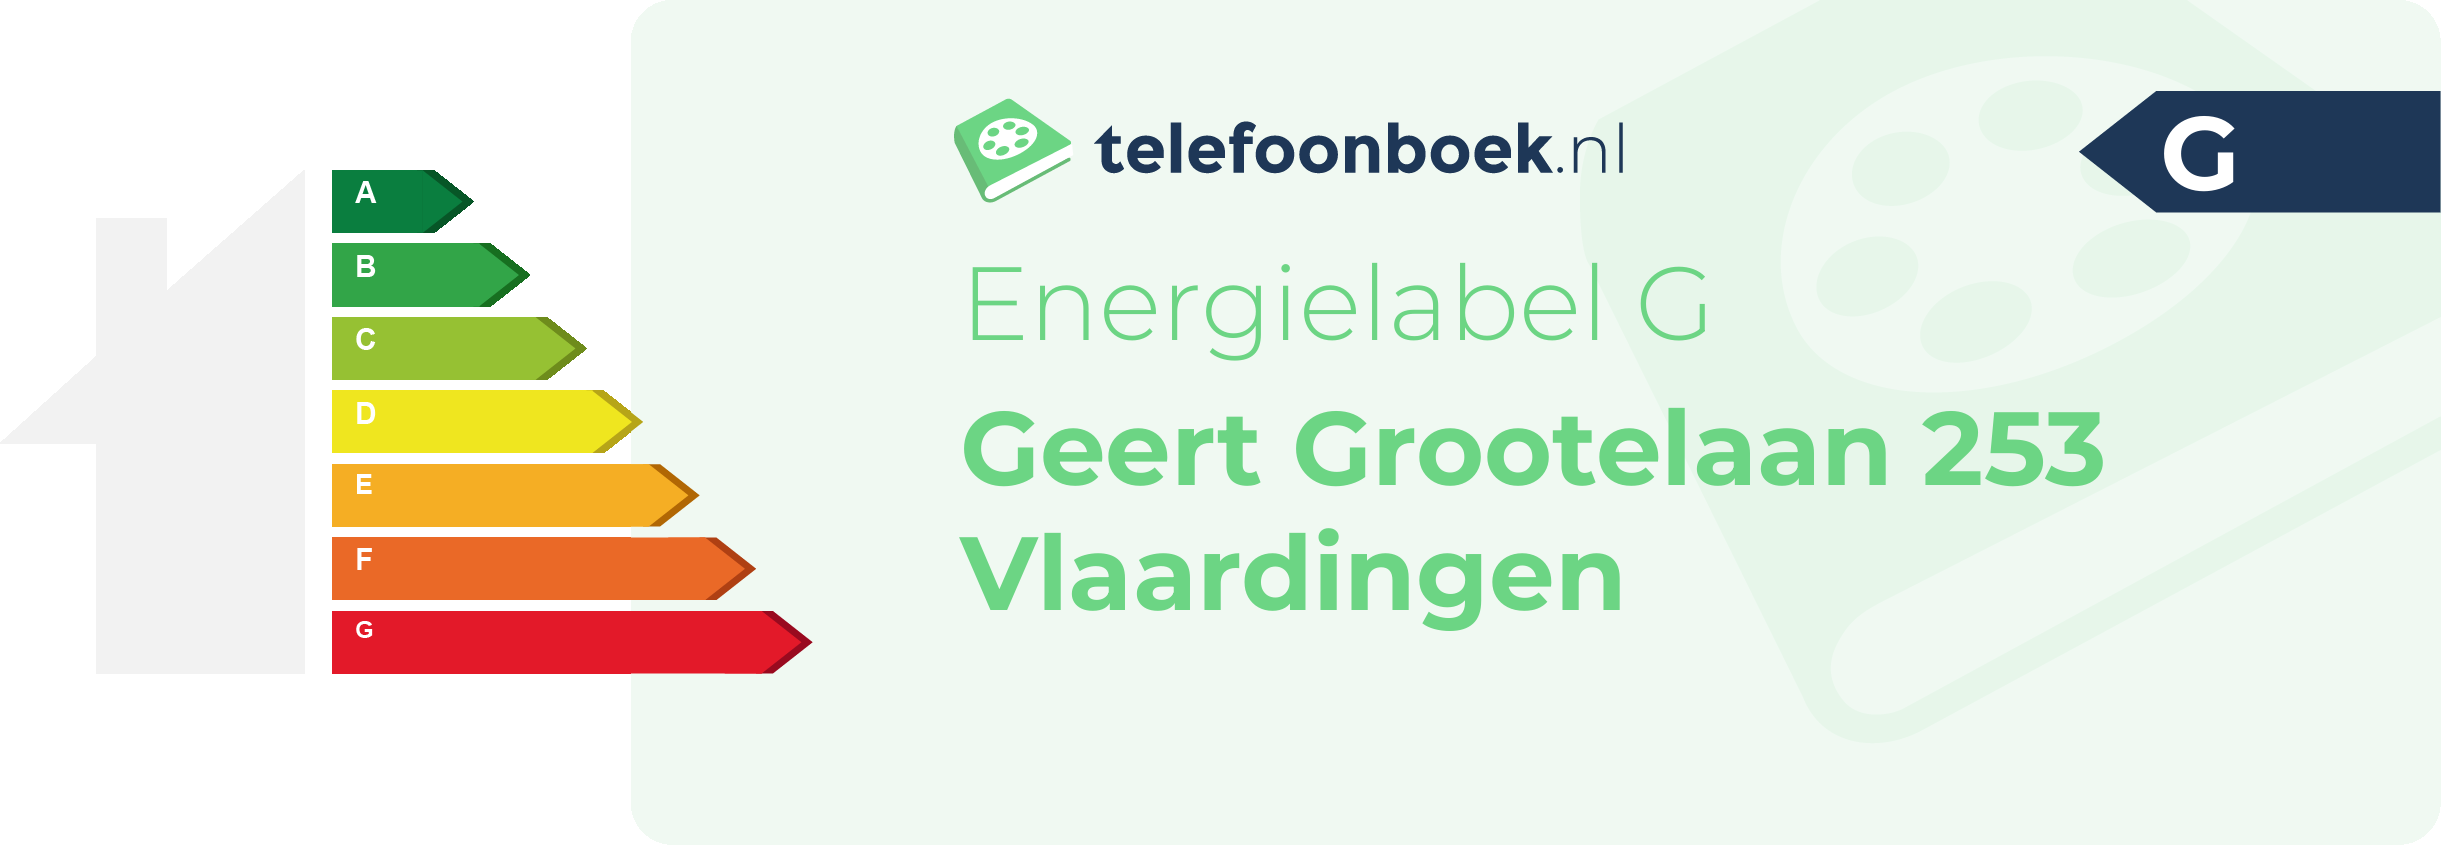 Energielabel Geert Grootelaan 253 Vlaardingen